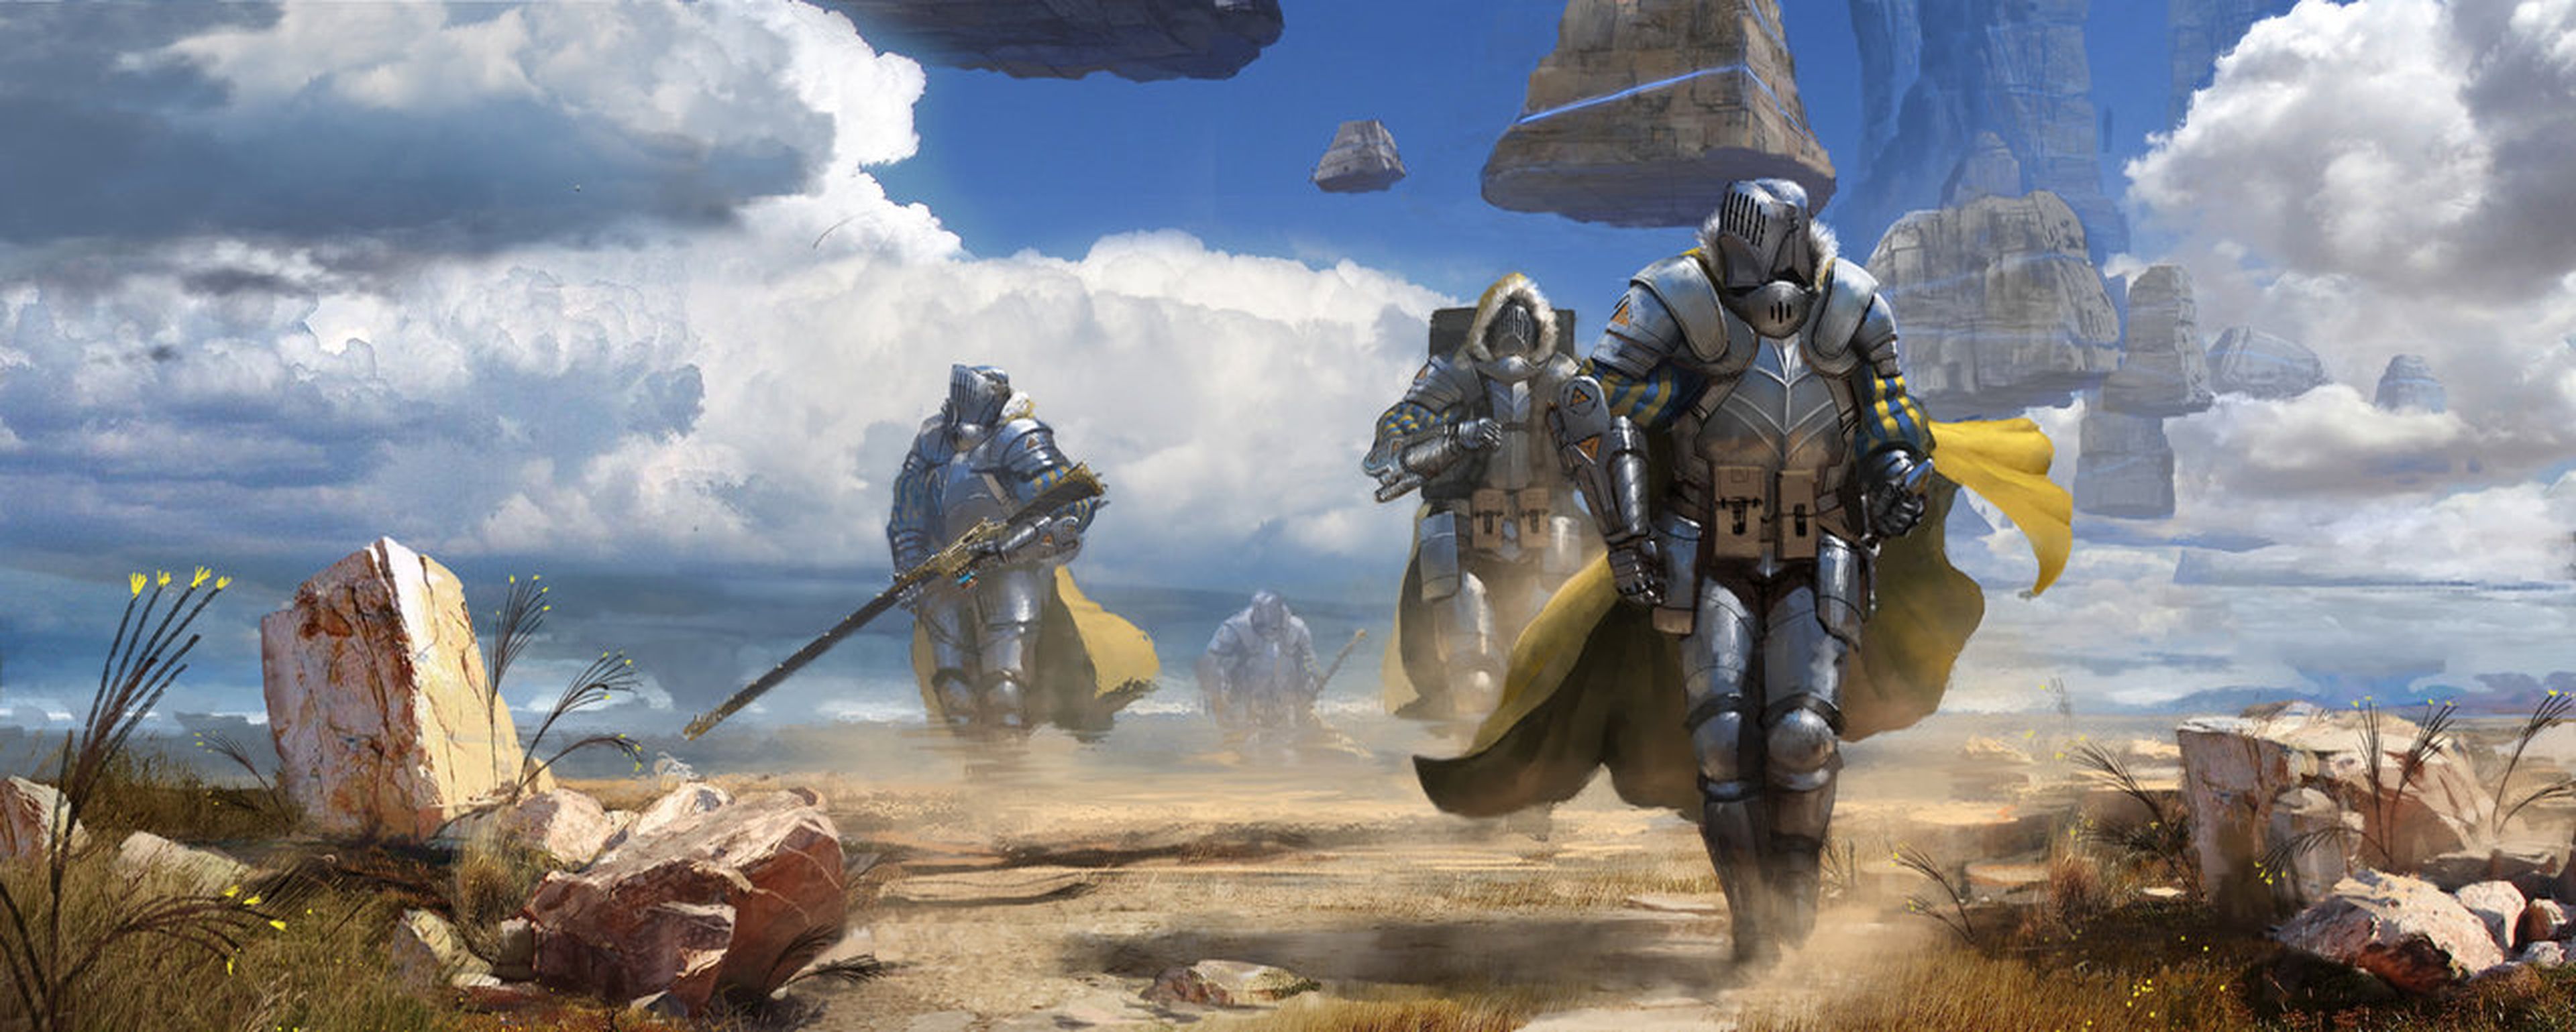 E3 2014: Éste podría ser el nuevo juego de los creadores de Killzone